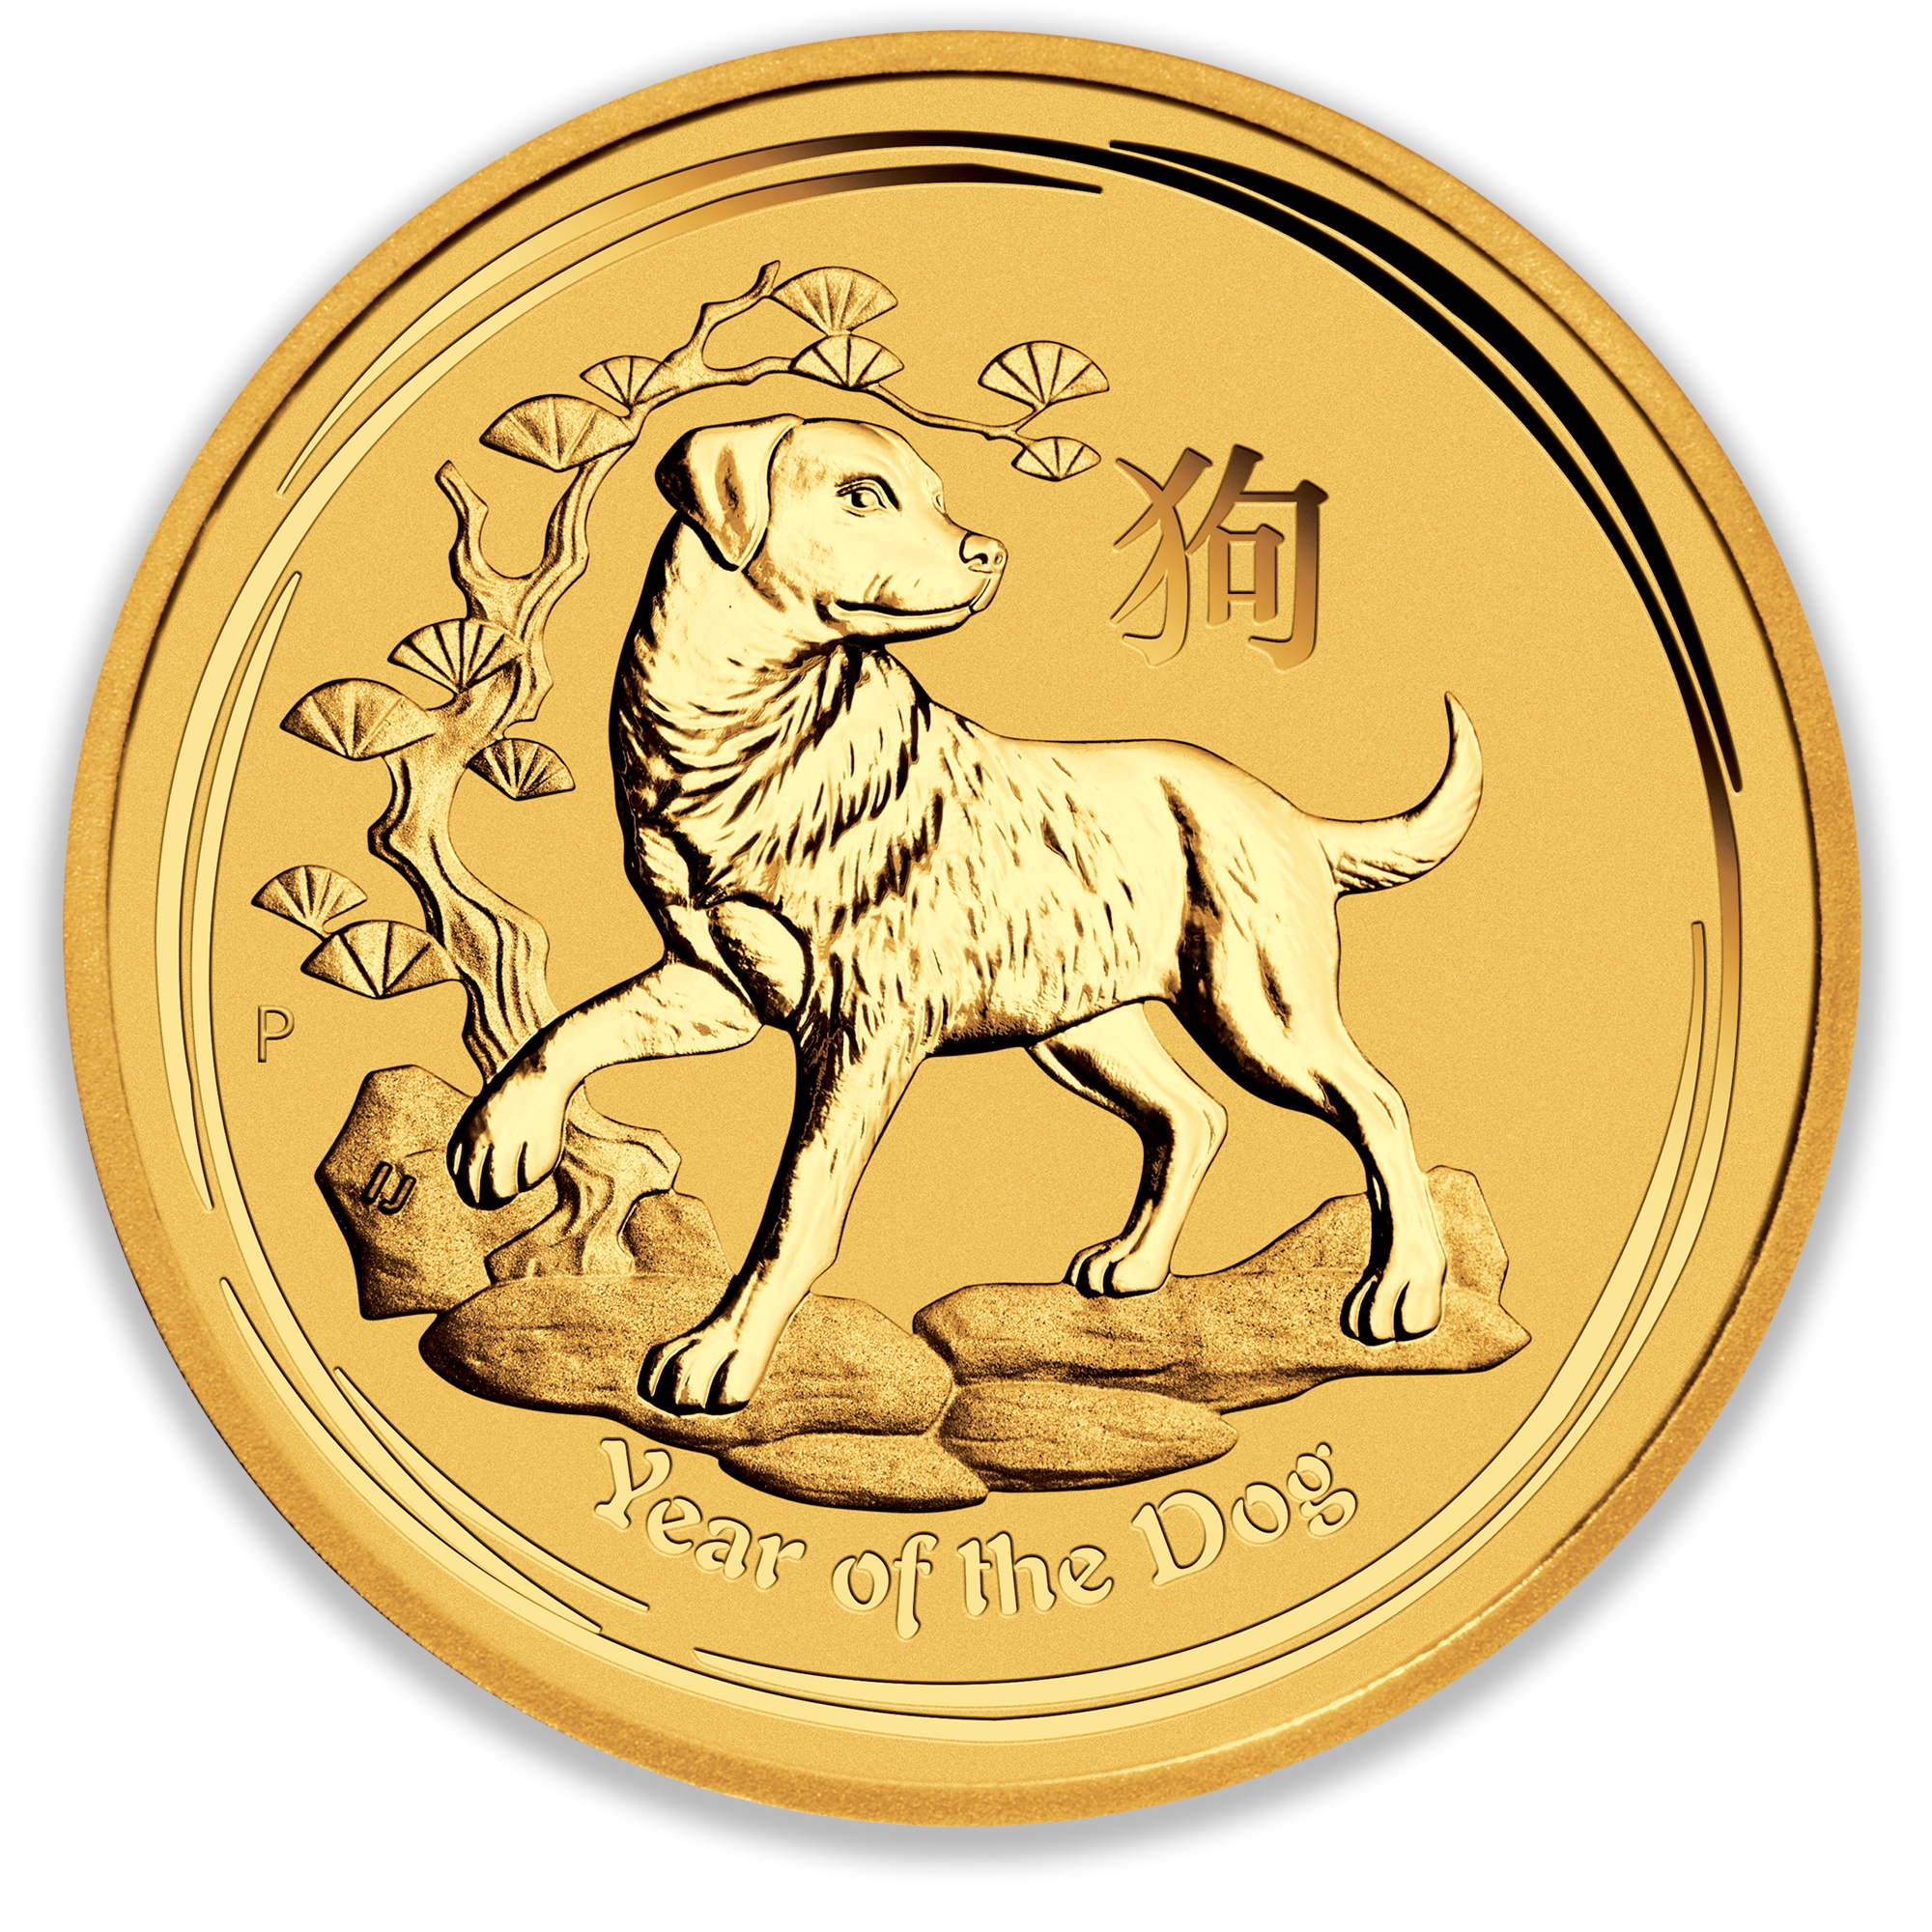 Камни года собаки. Золотая монета Лунар год собаки. Золотые монеты Лунар Австралия. Золотые монеты австралийские Лунар II. Олотая монета «Лунар-2 год свинья».